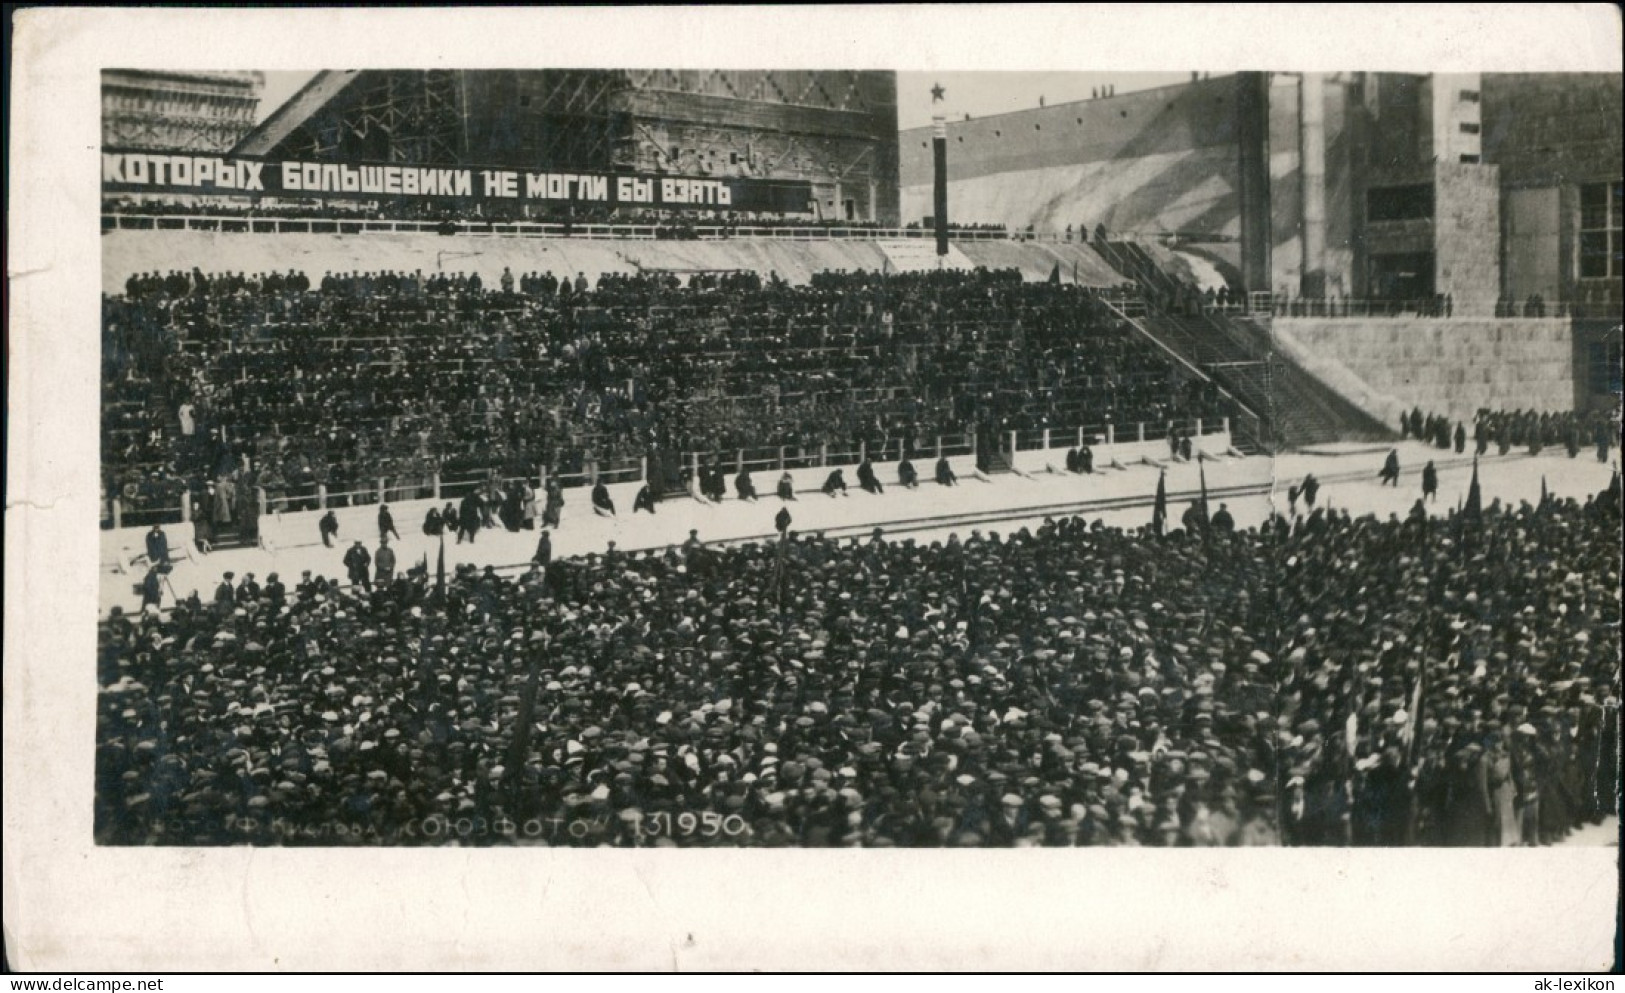 Foto  Stadion Veranstaltung Versammlung Sowjetunion 1950 Privatfoto - Zu Identifizieren